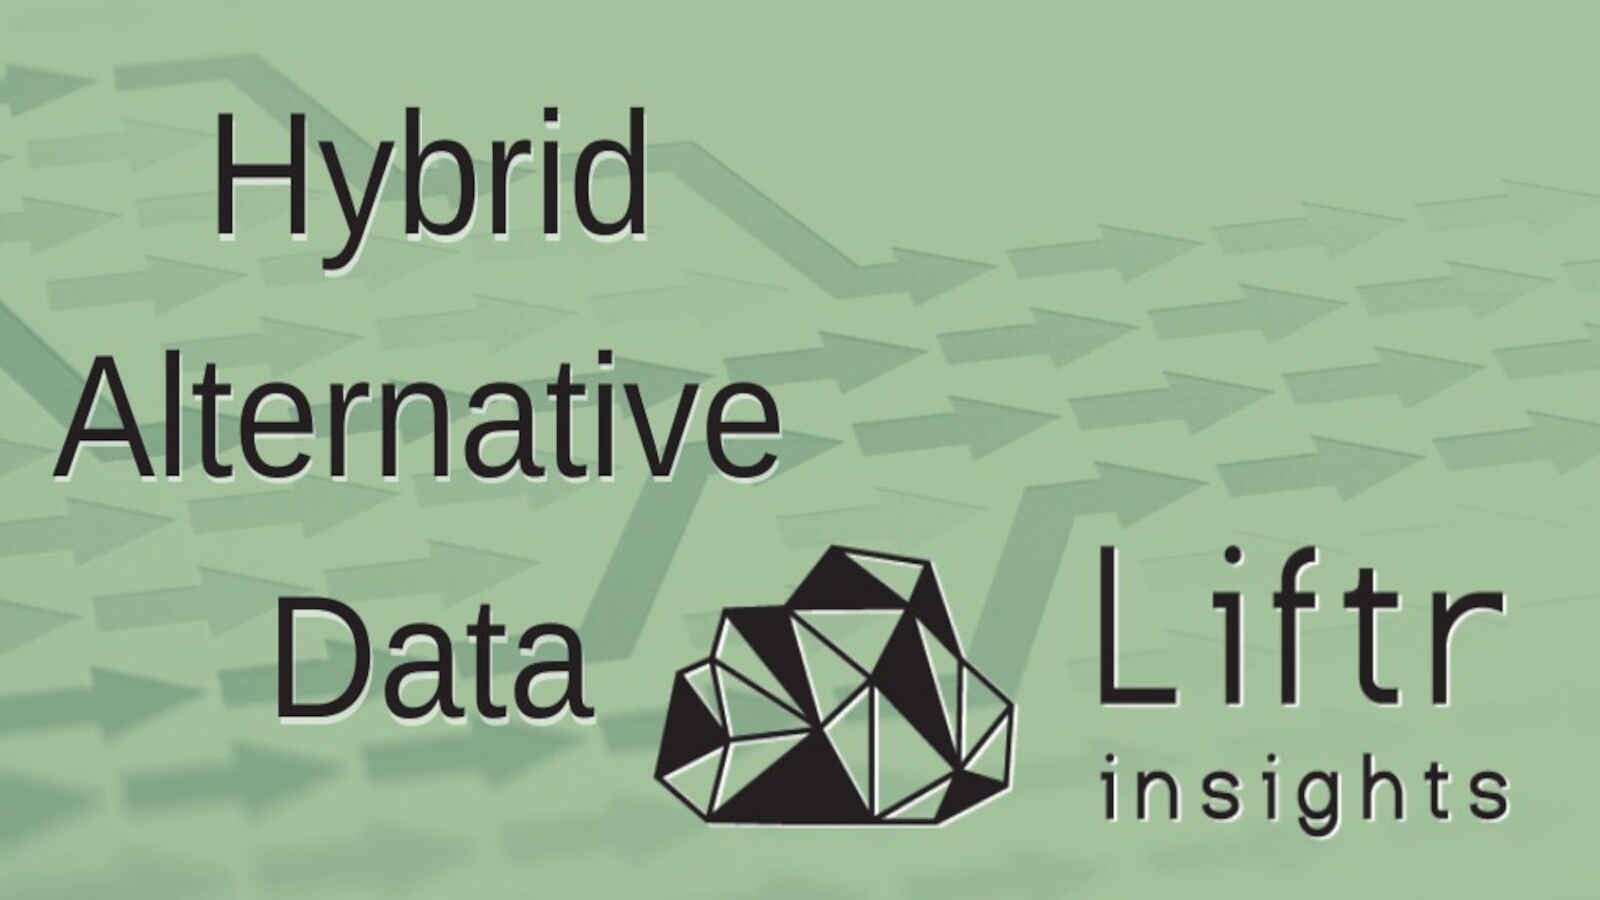 Liftr Insights Defines Hybrid Alternative Data Market